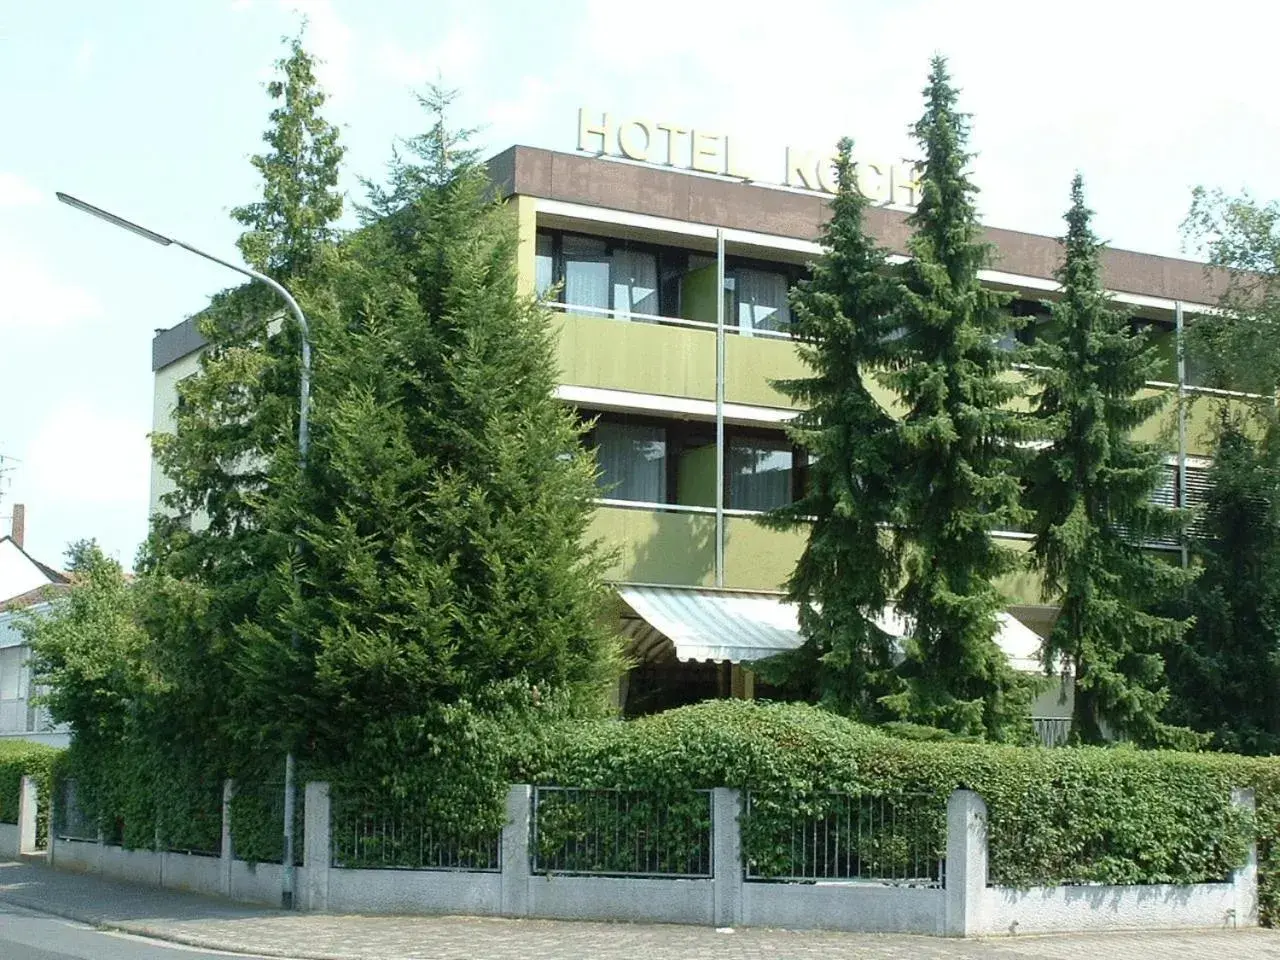 Facade/entrance, Property Building in Hotel Koch Maingau